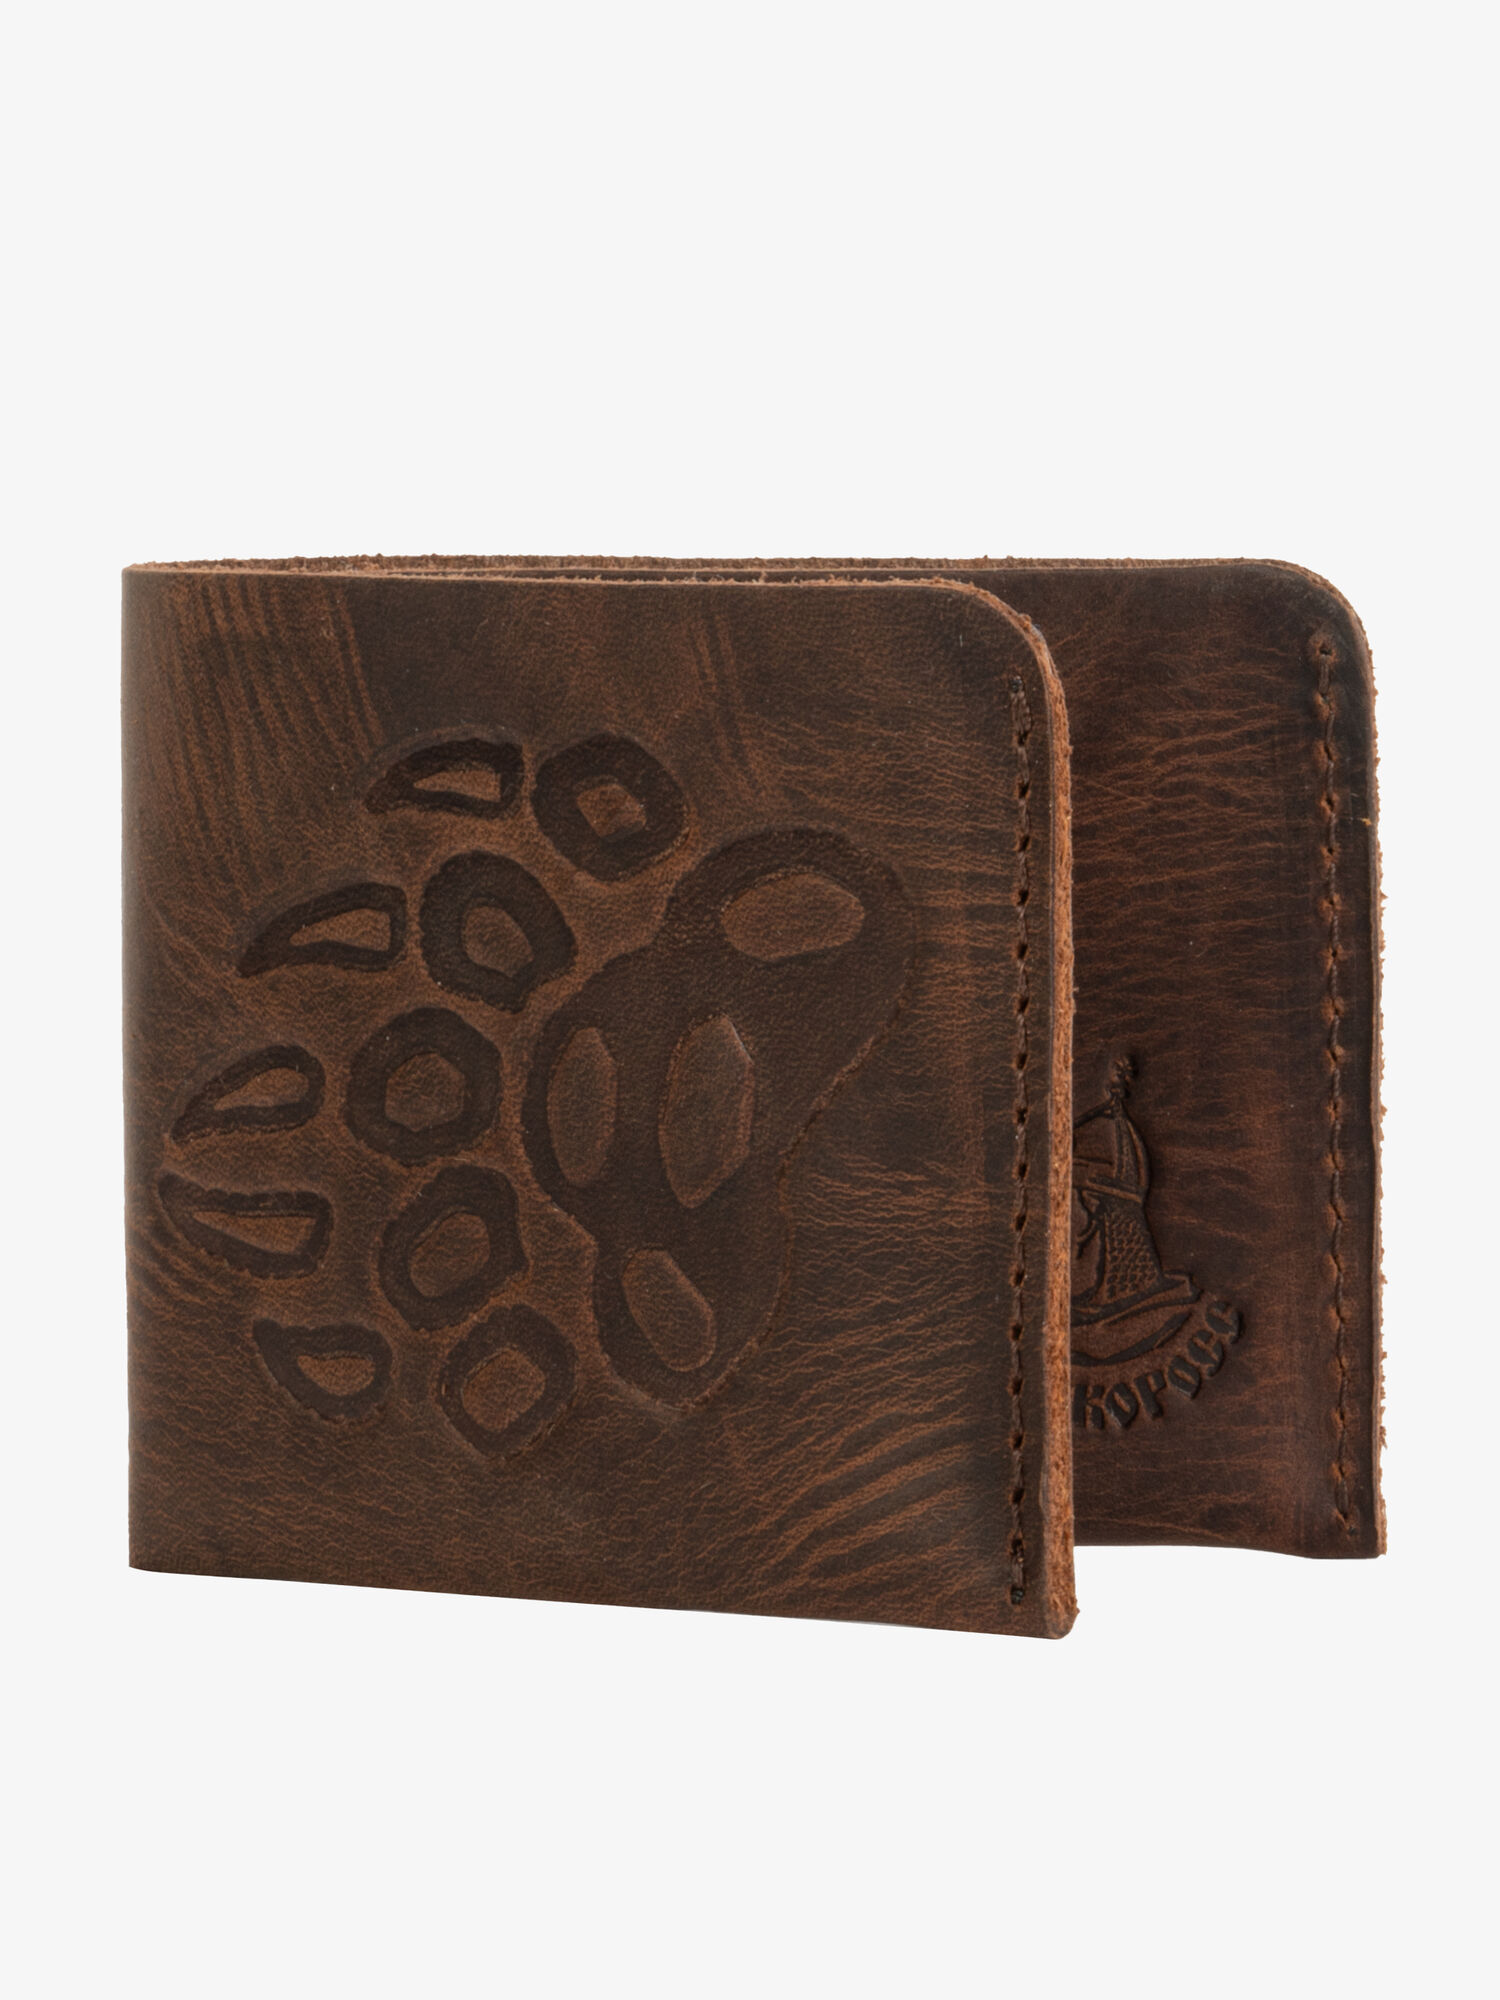 Бумажник-Компактный из натуральной кожи «Крейзи» цвета тёмного шоколада